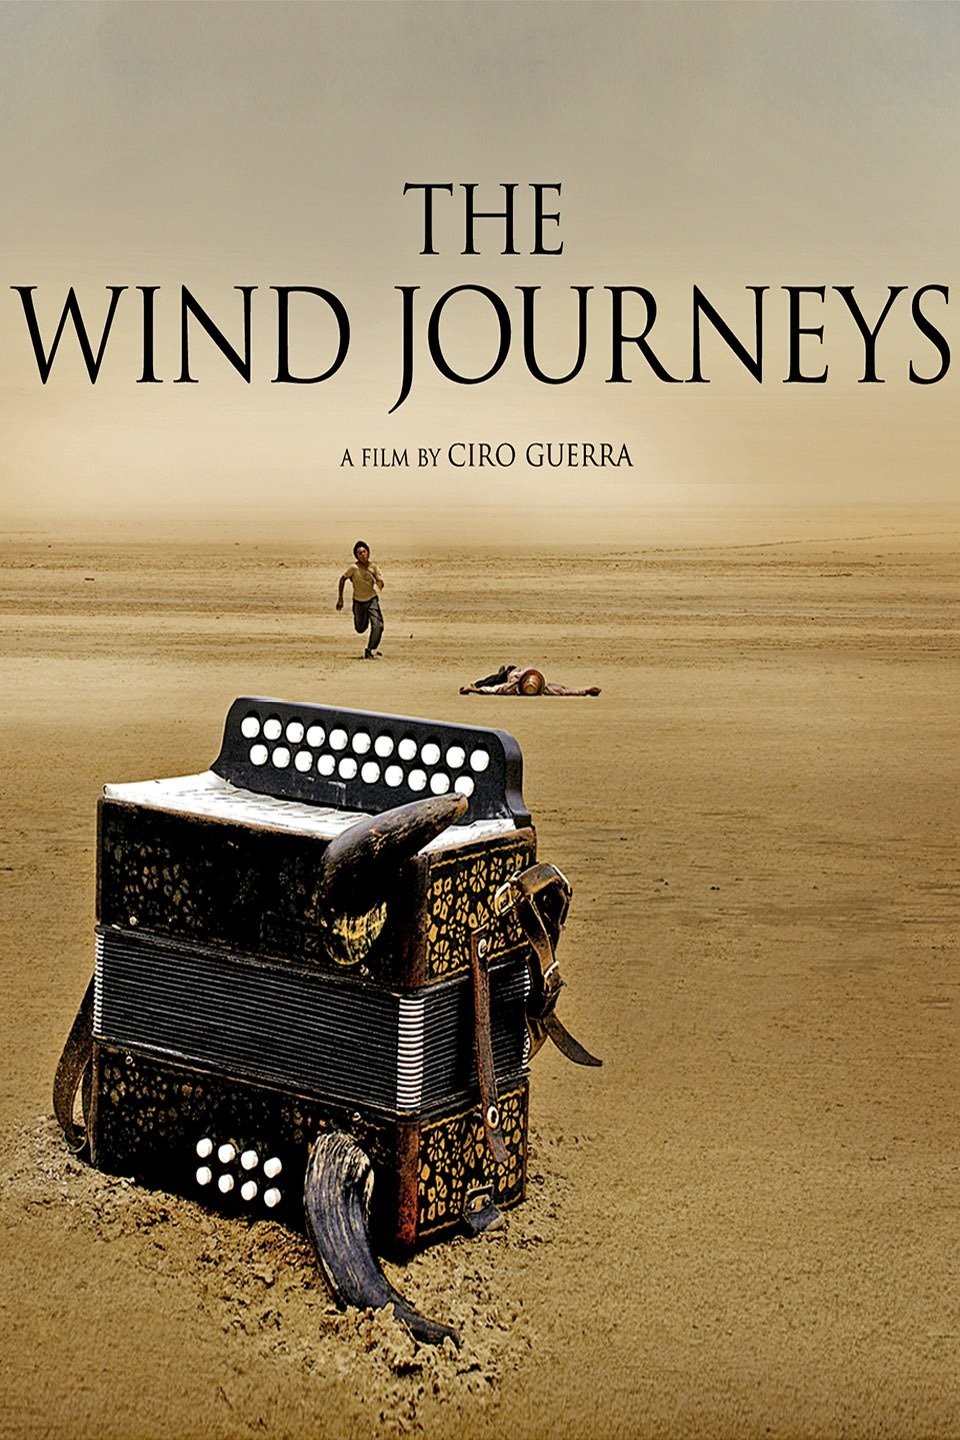 the wind journeys summary